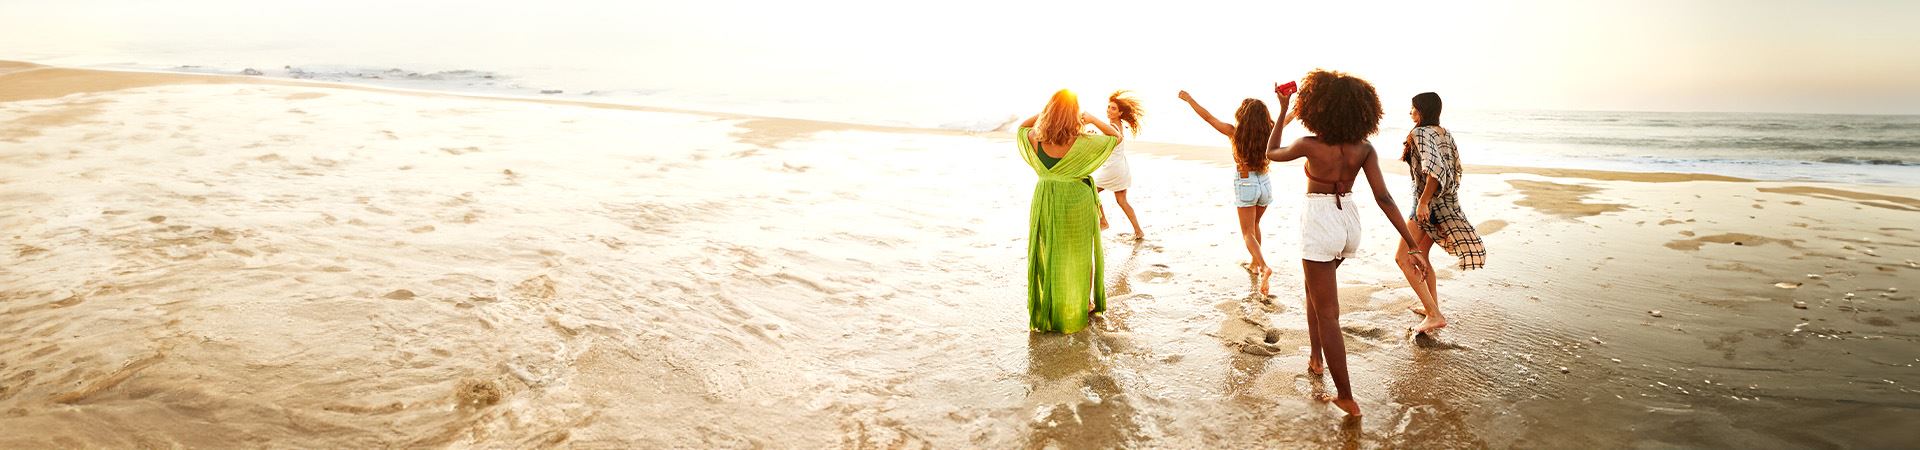 Cette image montre cinq filles au bord de la mer. L’une d’elles a les bras en l’air et une autre court. Elles portent toutes des vêtements légers et d’été. En arrière-plan, on voit la mer et la lumière indique que c'est le coucher du soleil.